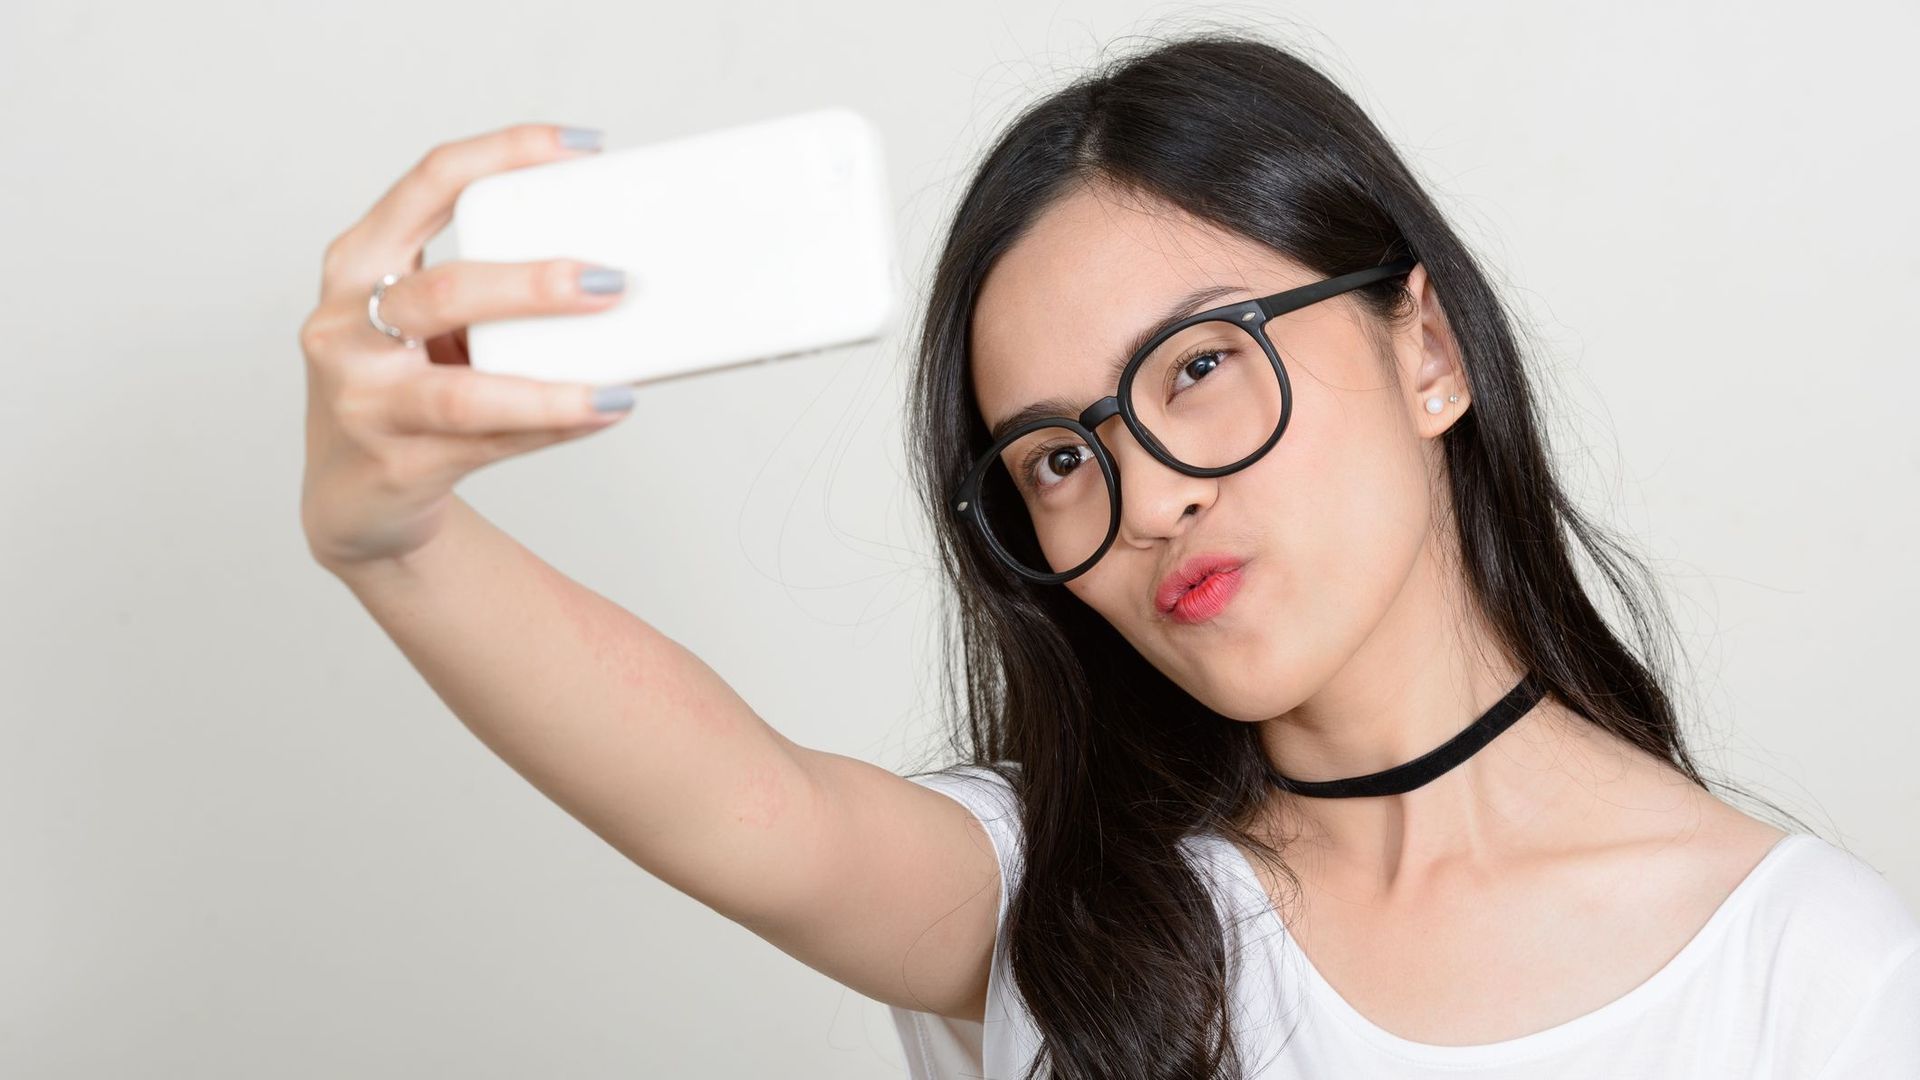 Le selfie pousse-t-il à la chirurgie esthétique?